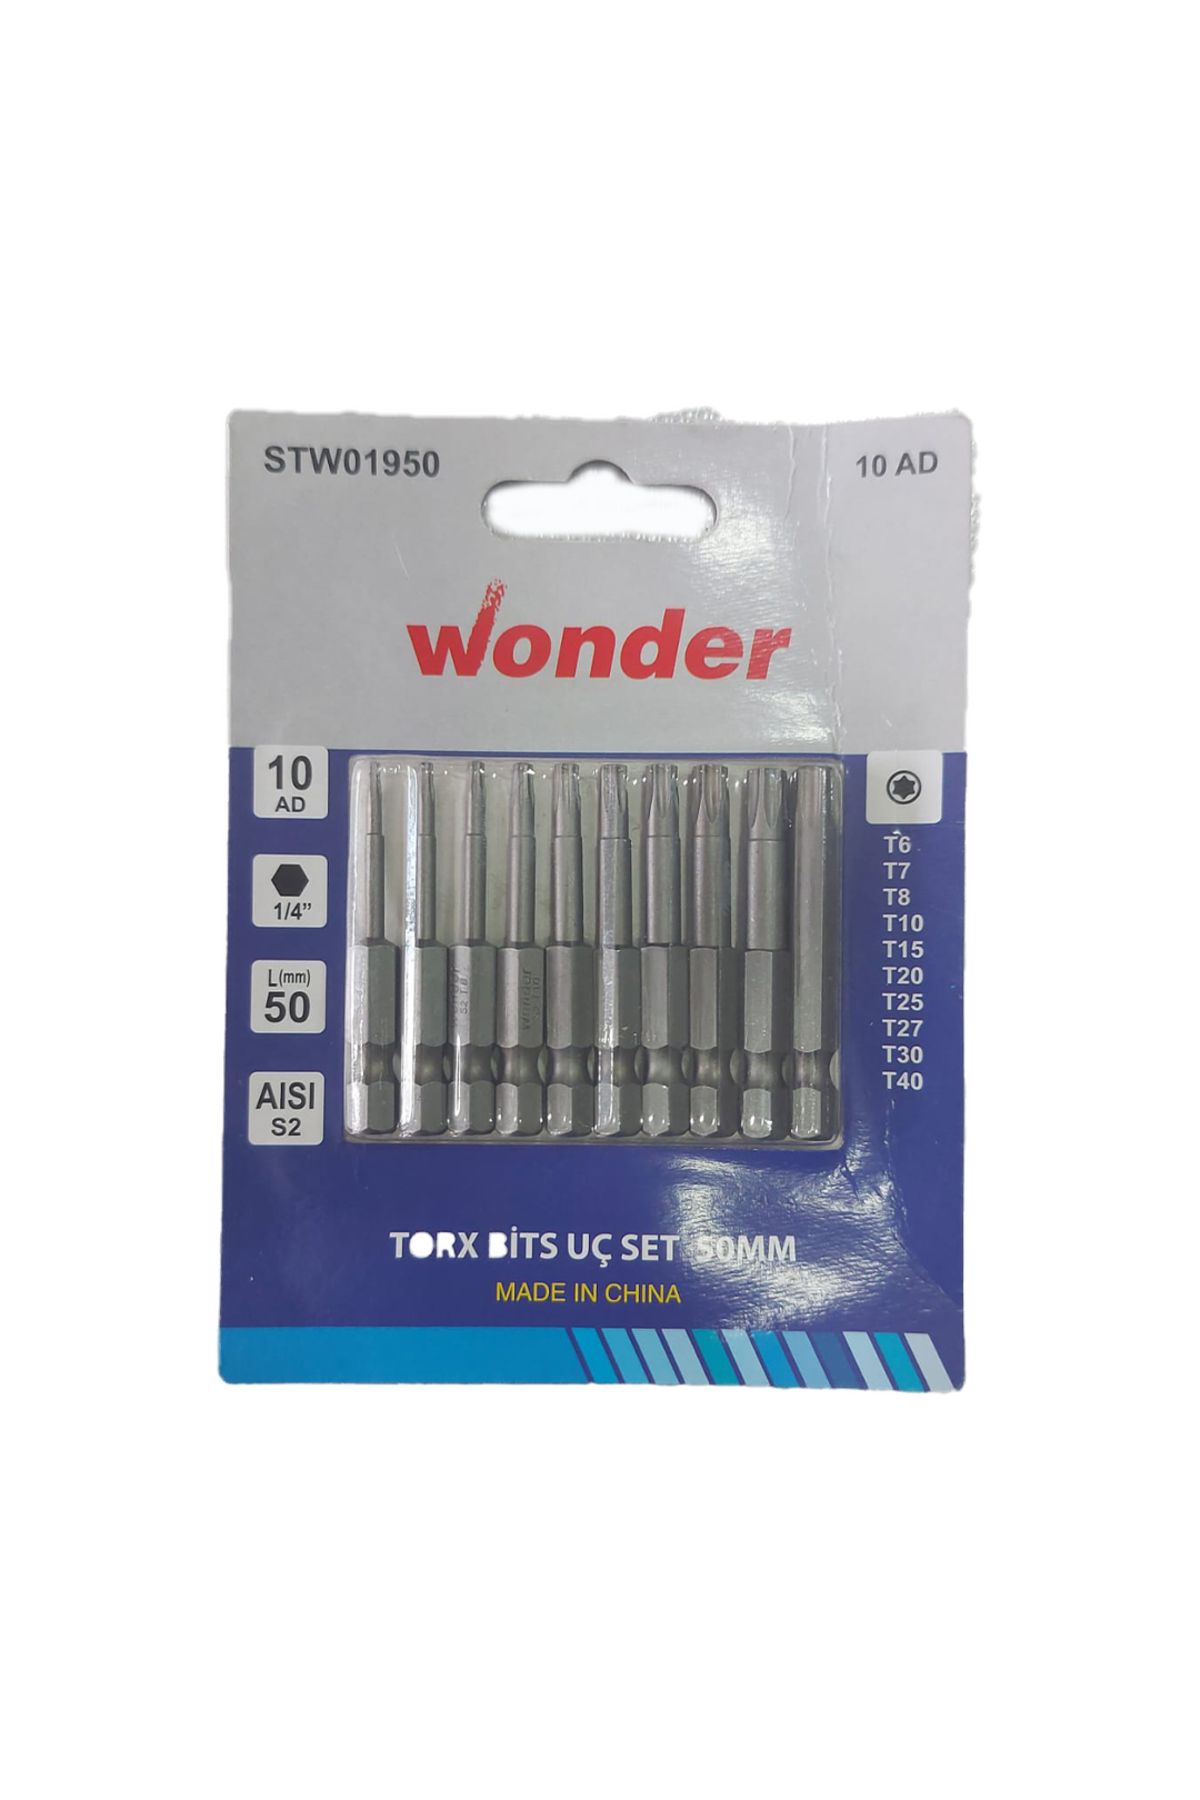 Wonder Torx Bits Uç Set 50mm 10 Lu (T6,T7,T8,T10,T15,T20, T25, T27, T30,T40)